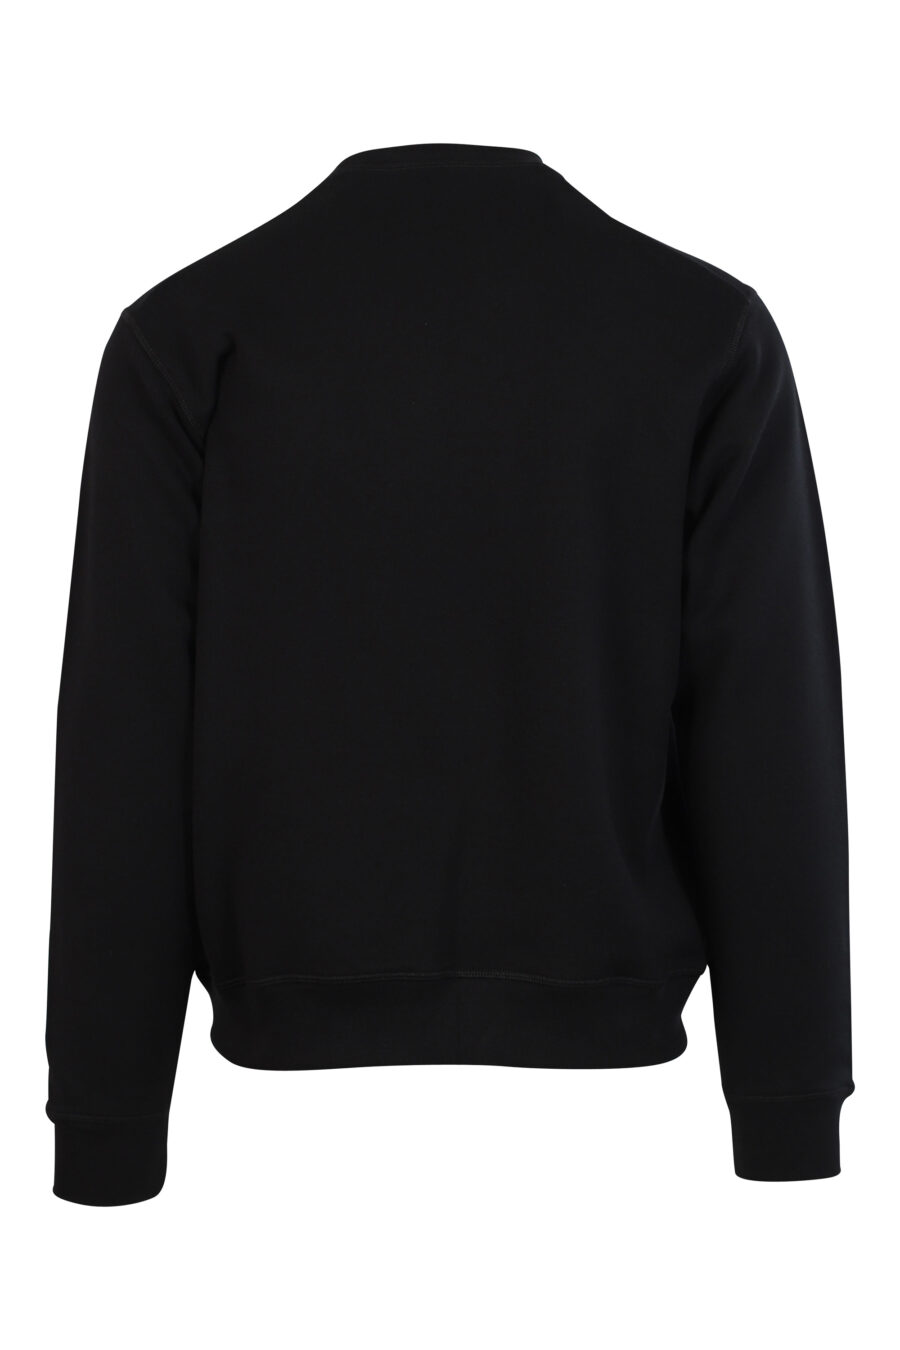 Schwarzes Sweatshirt mit weißem, zentriertem Minilogo - 8052134120460 2